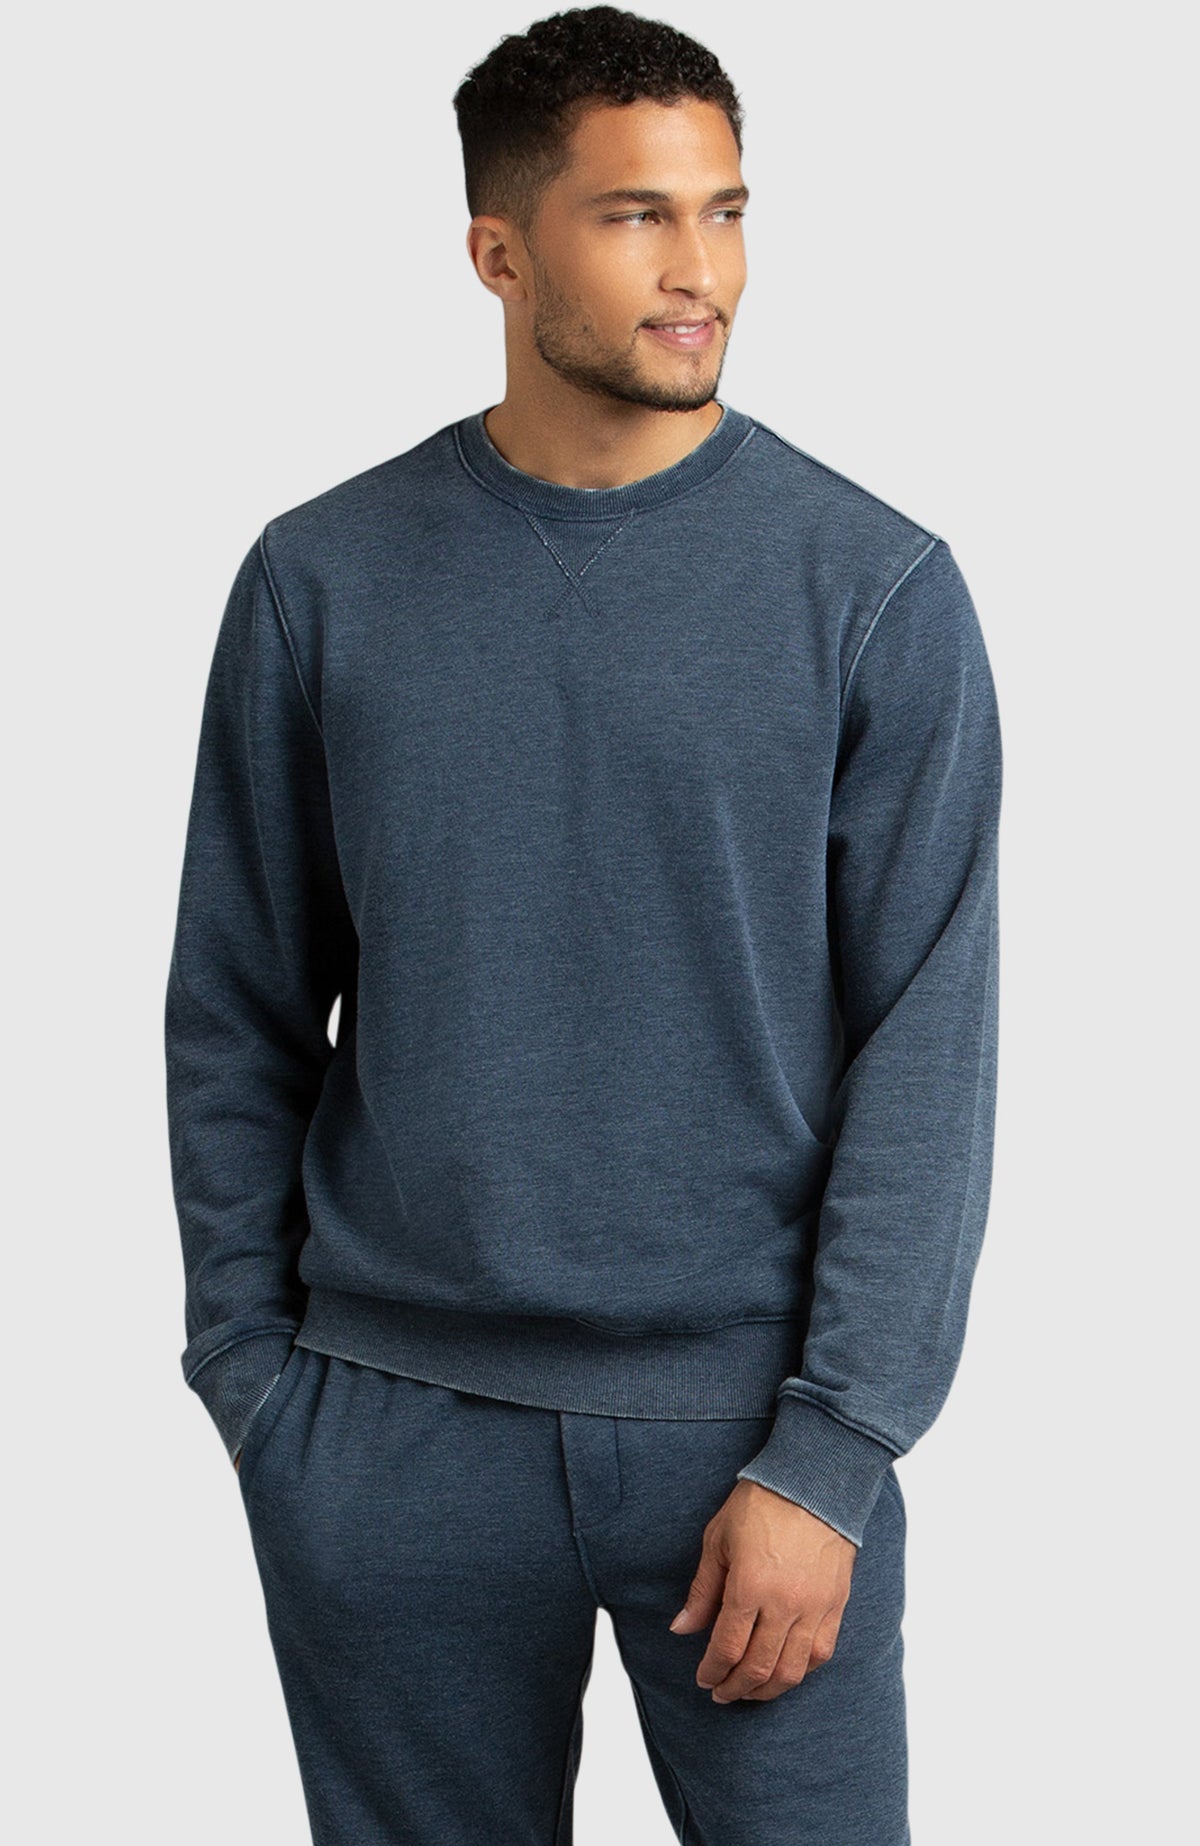 Navy Blue Fleece Crewneck Sweatshirt for Men - Front